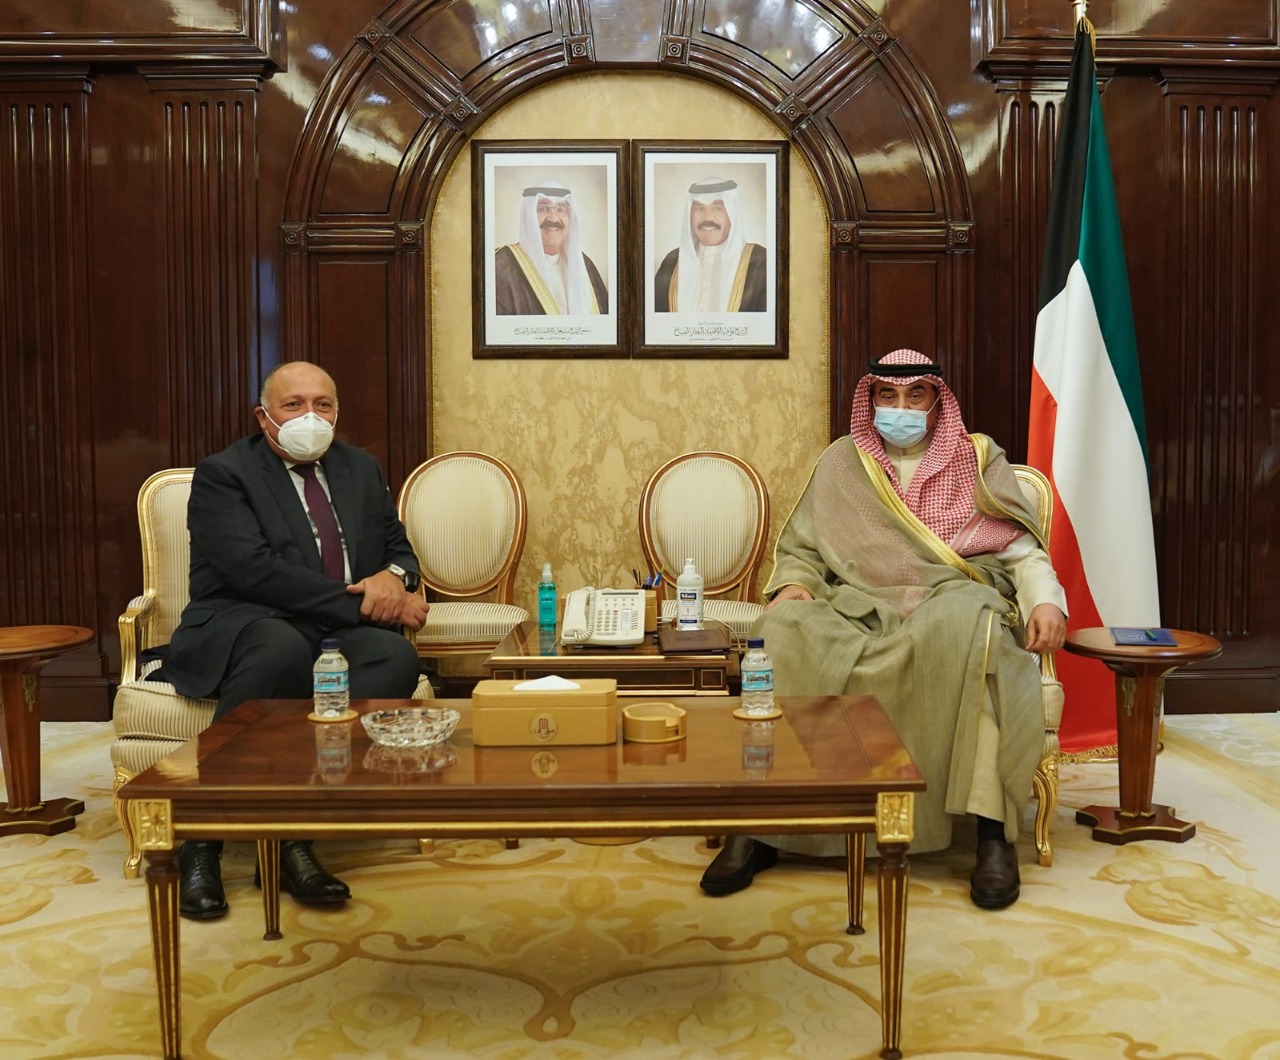   شكرى يبحث مع رئيس وزراء الكويت سبل دفع مجالات التعاون الثنائي